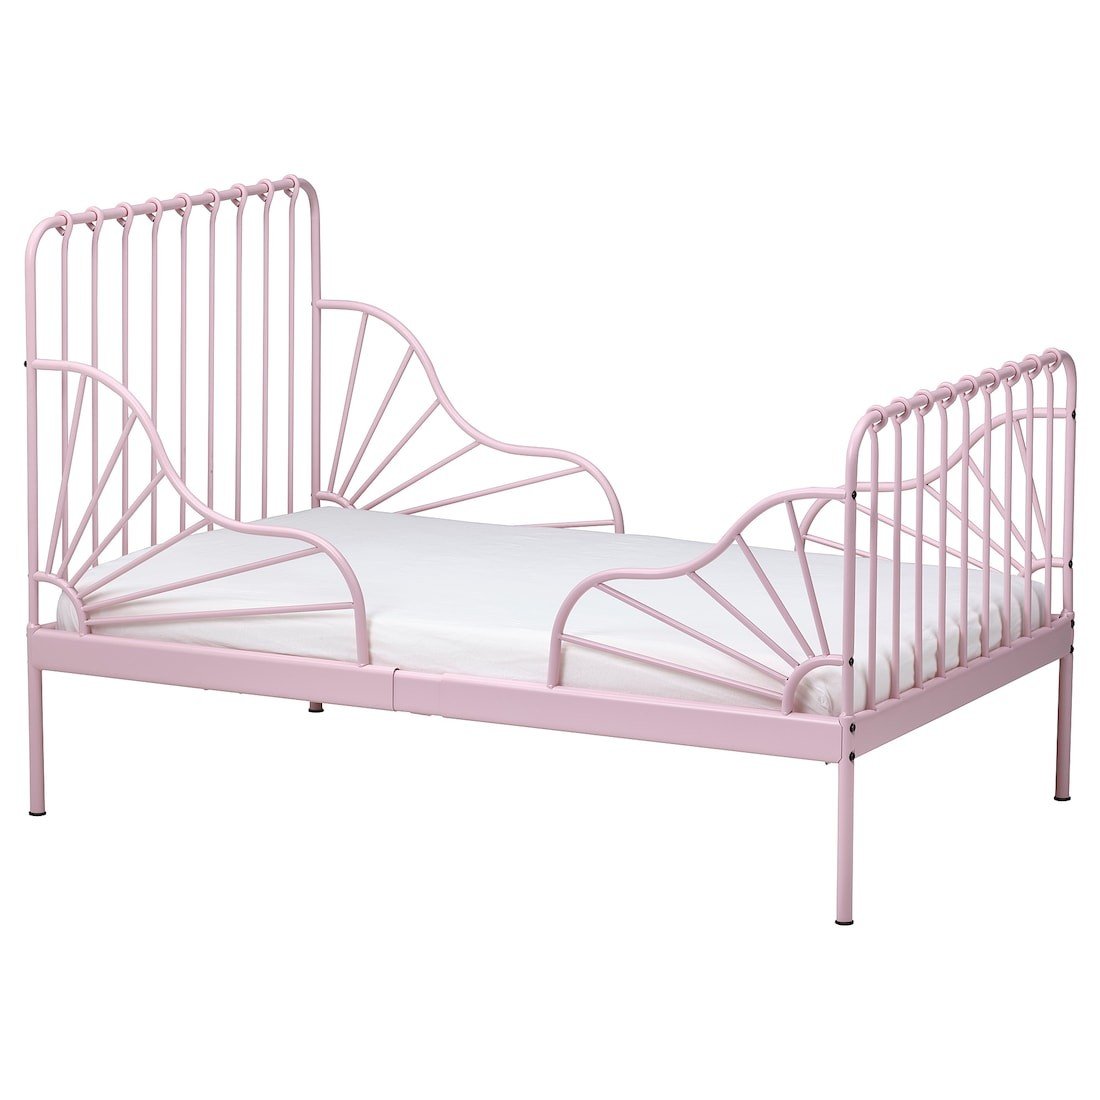 MINNEN МИННЕН Раздвижная кровать, светло-розовый, 80x200 см